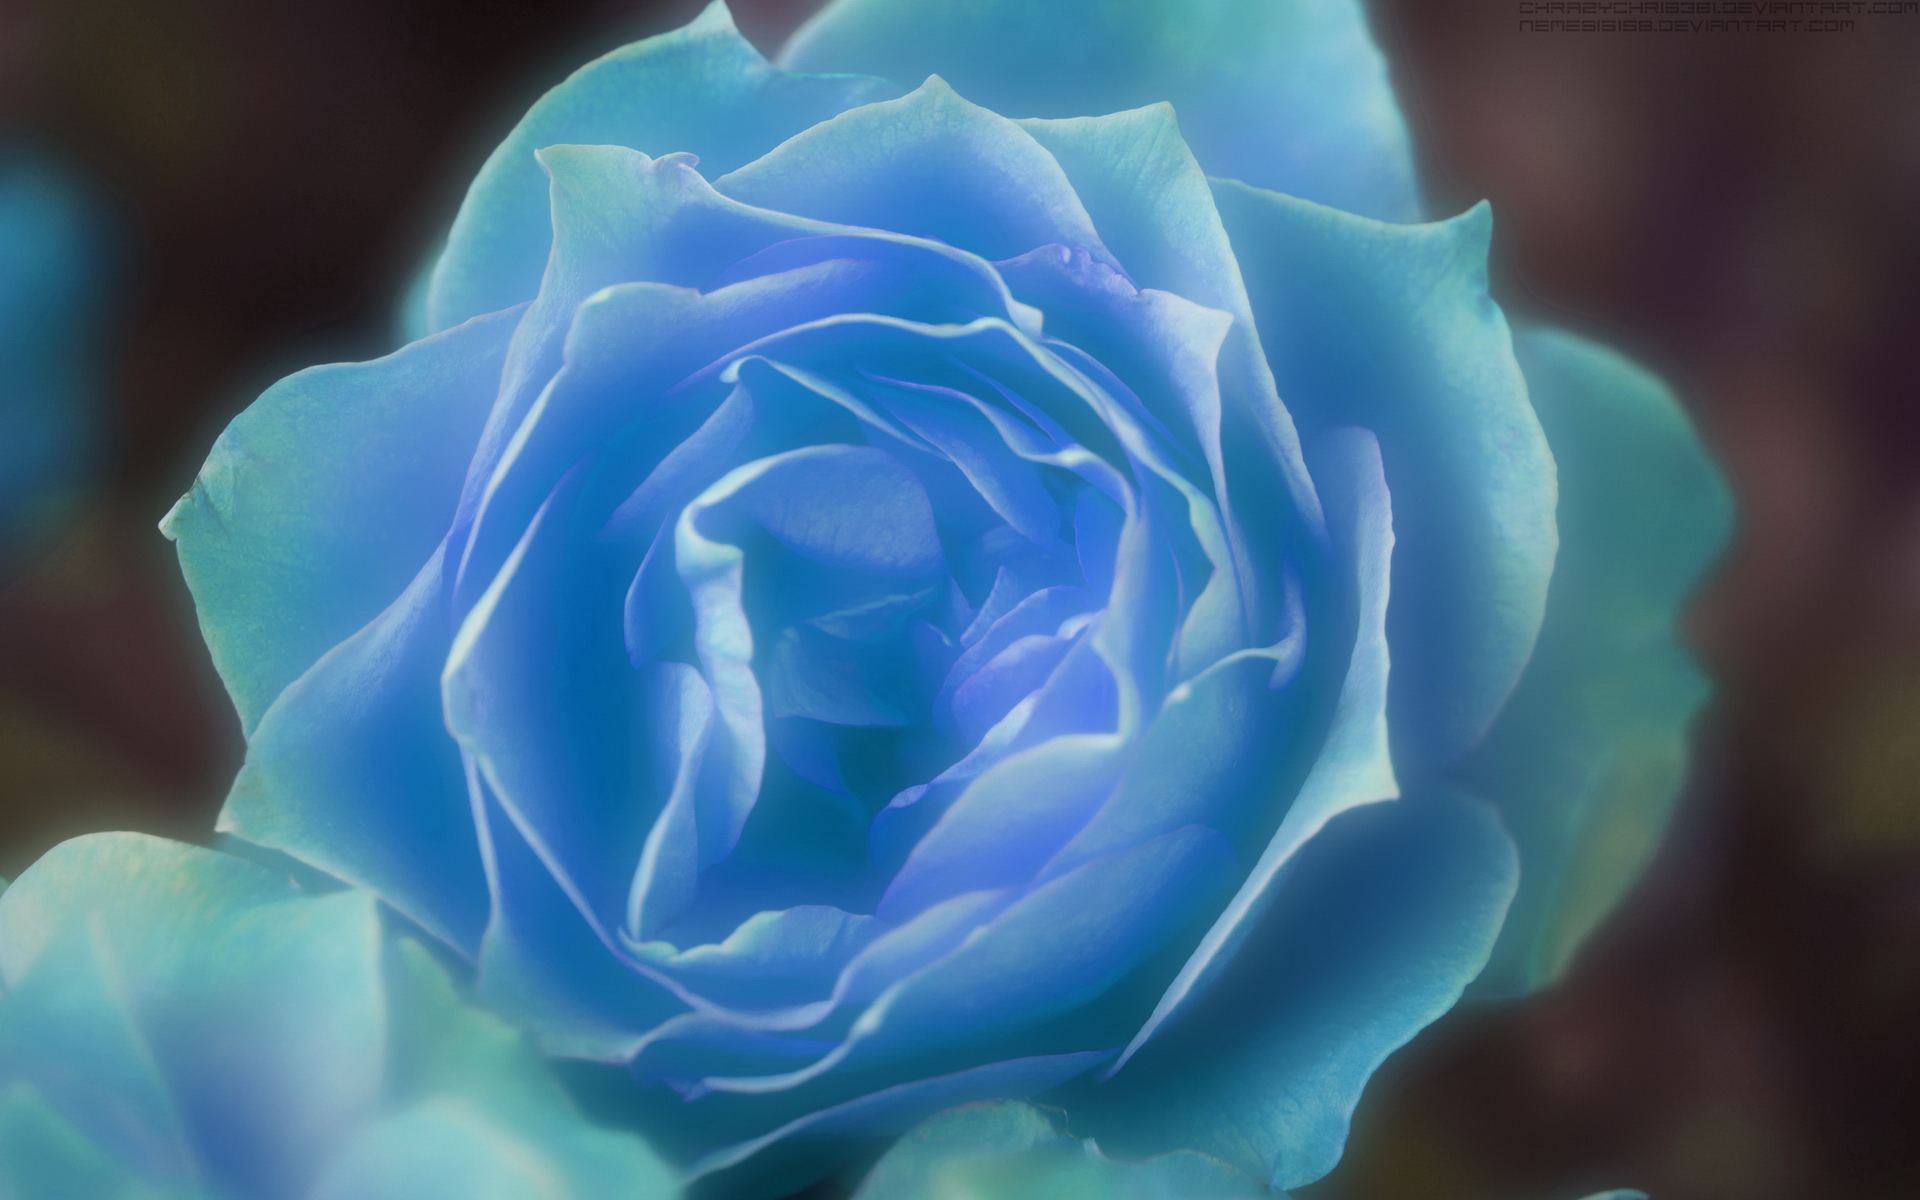 蓝色玫瑰花图片 蓝色玫瑰花图片大全大图 真实 | 犀牛图片网